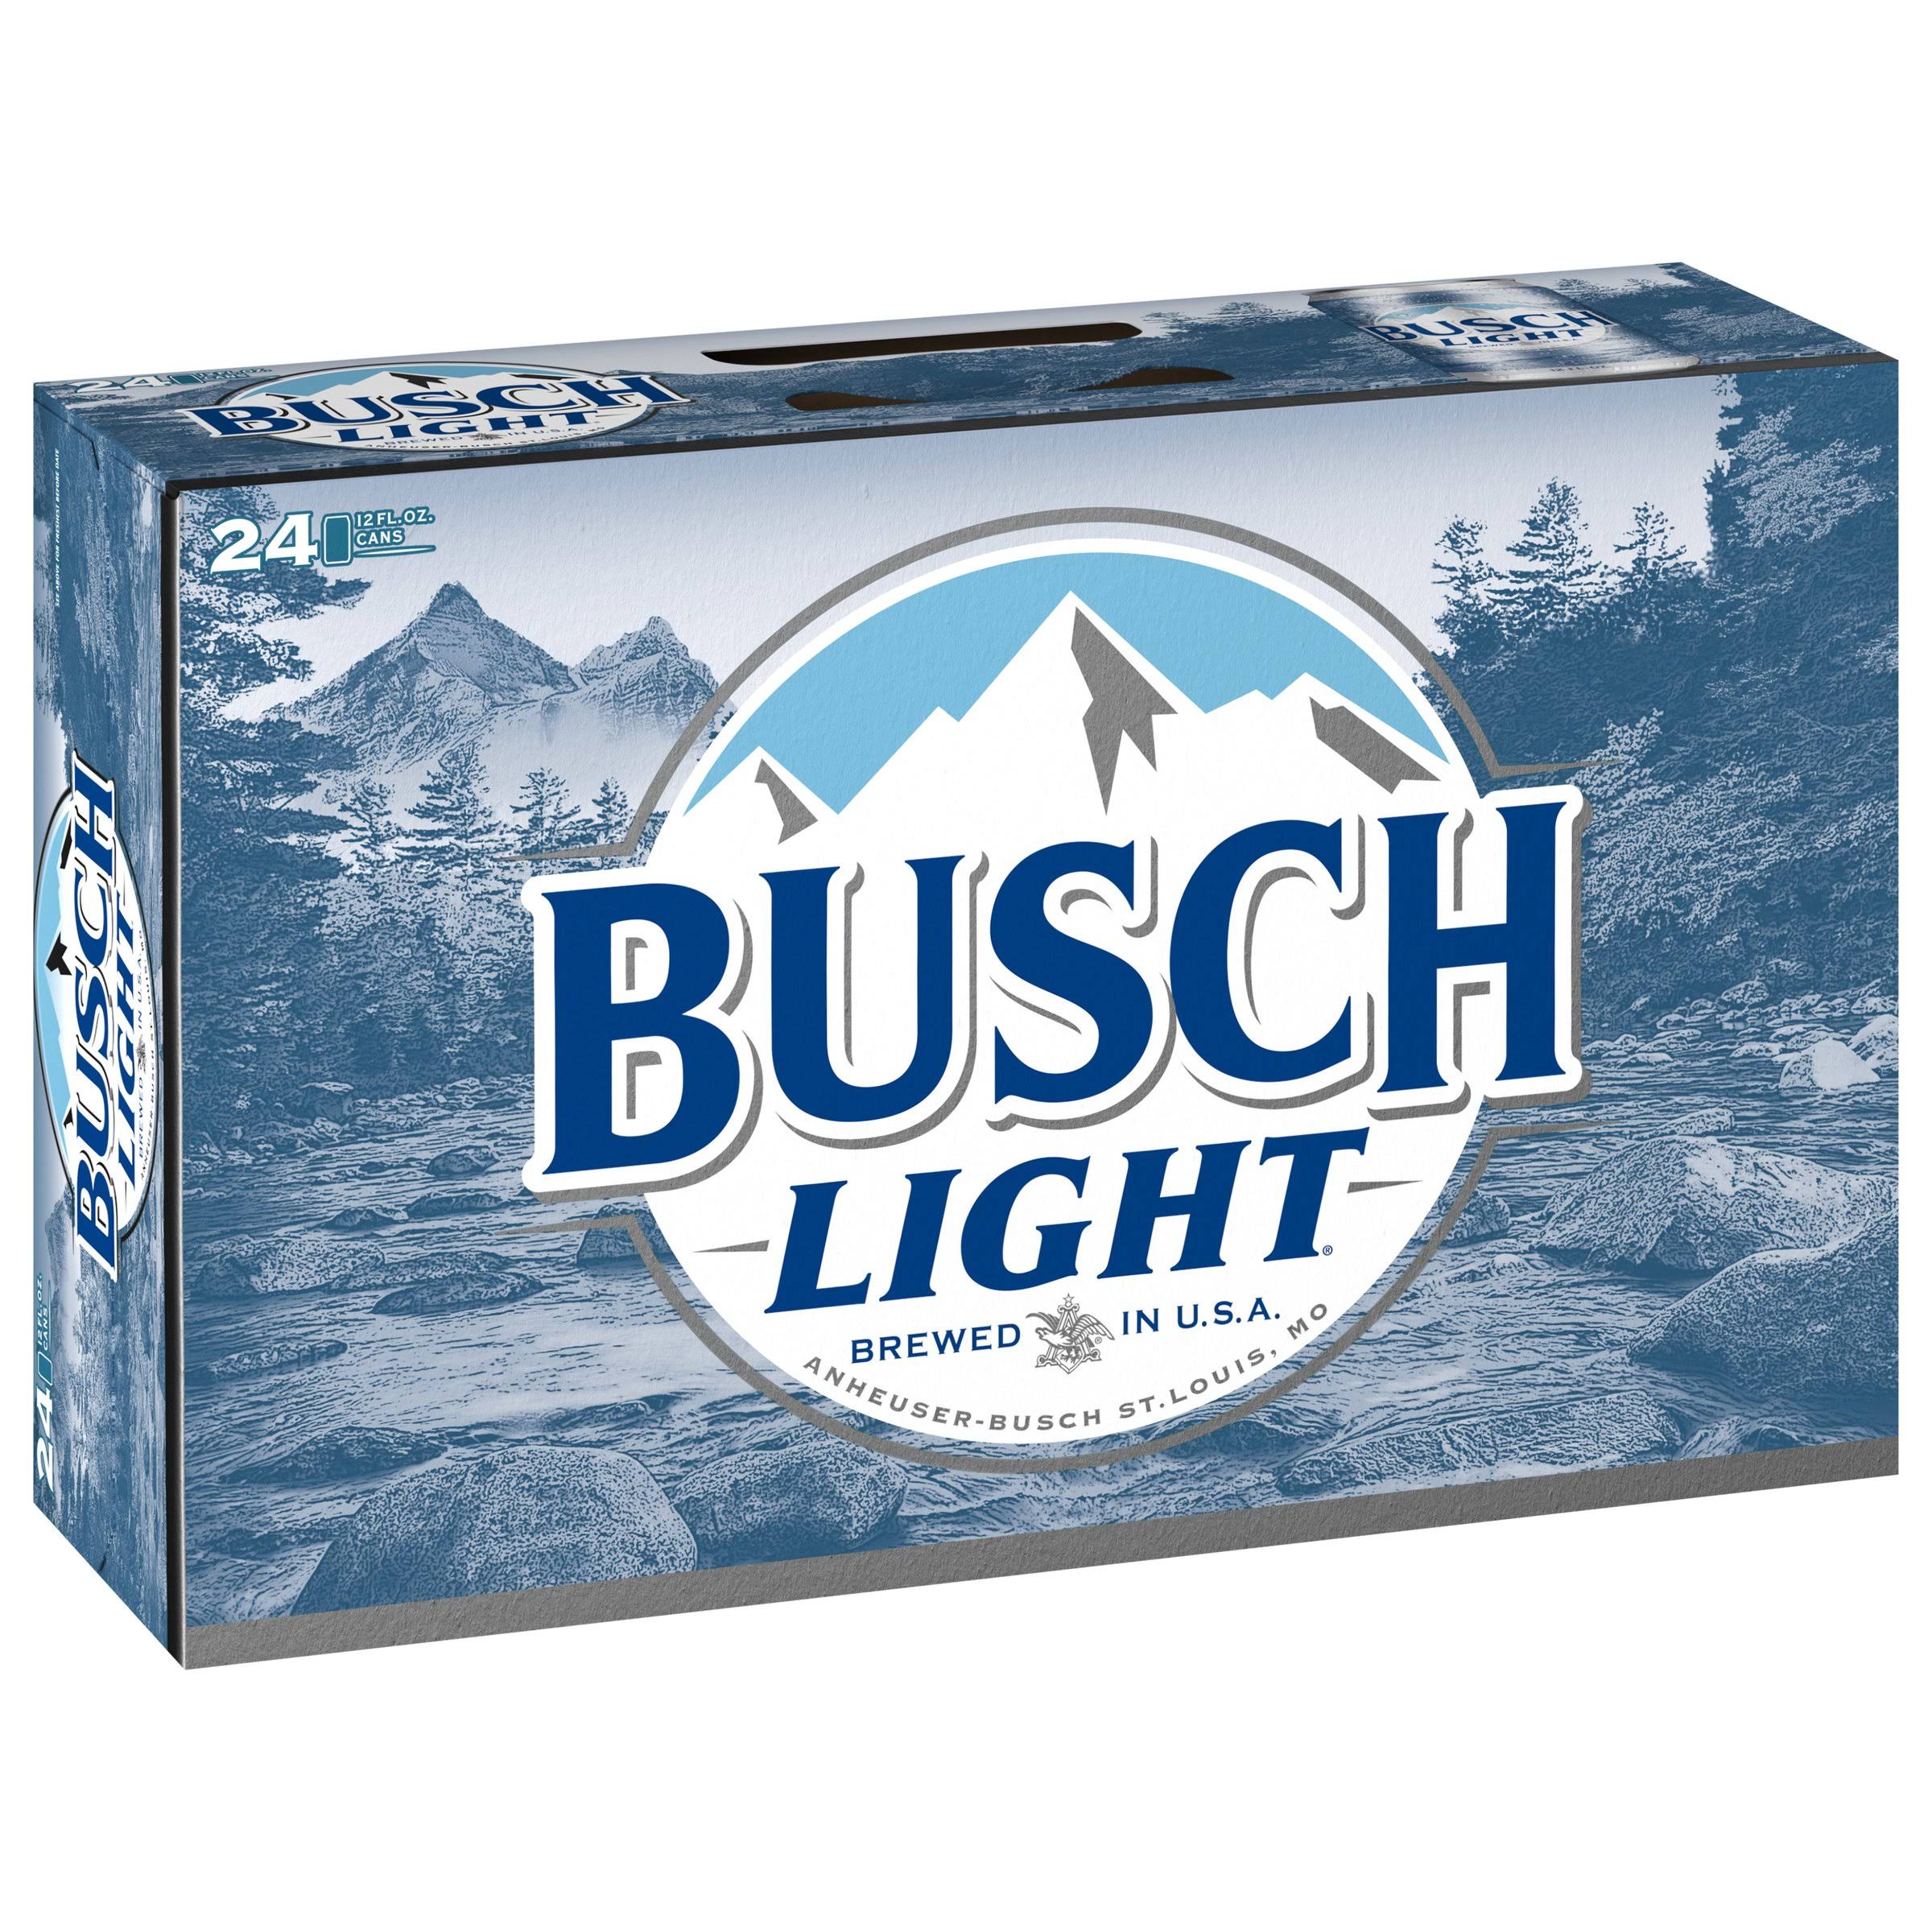 Busch Light Beer - 24 pk, 12 oz